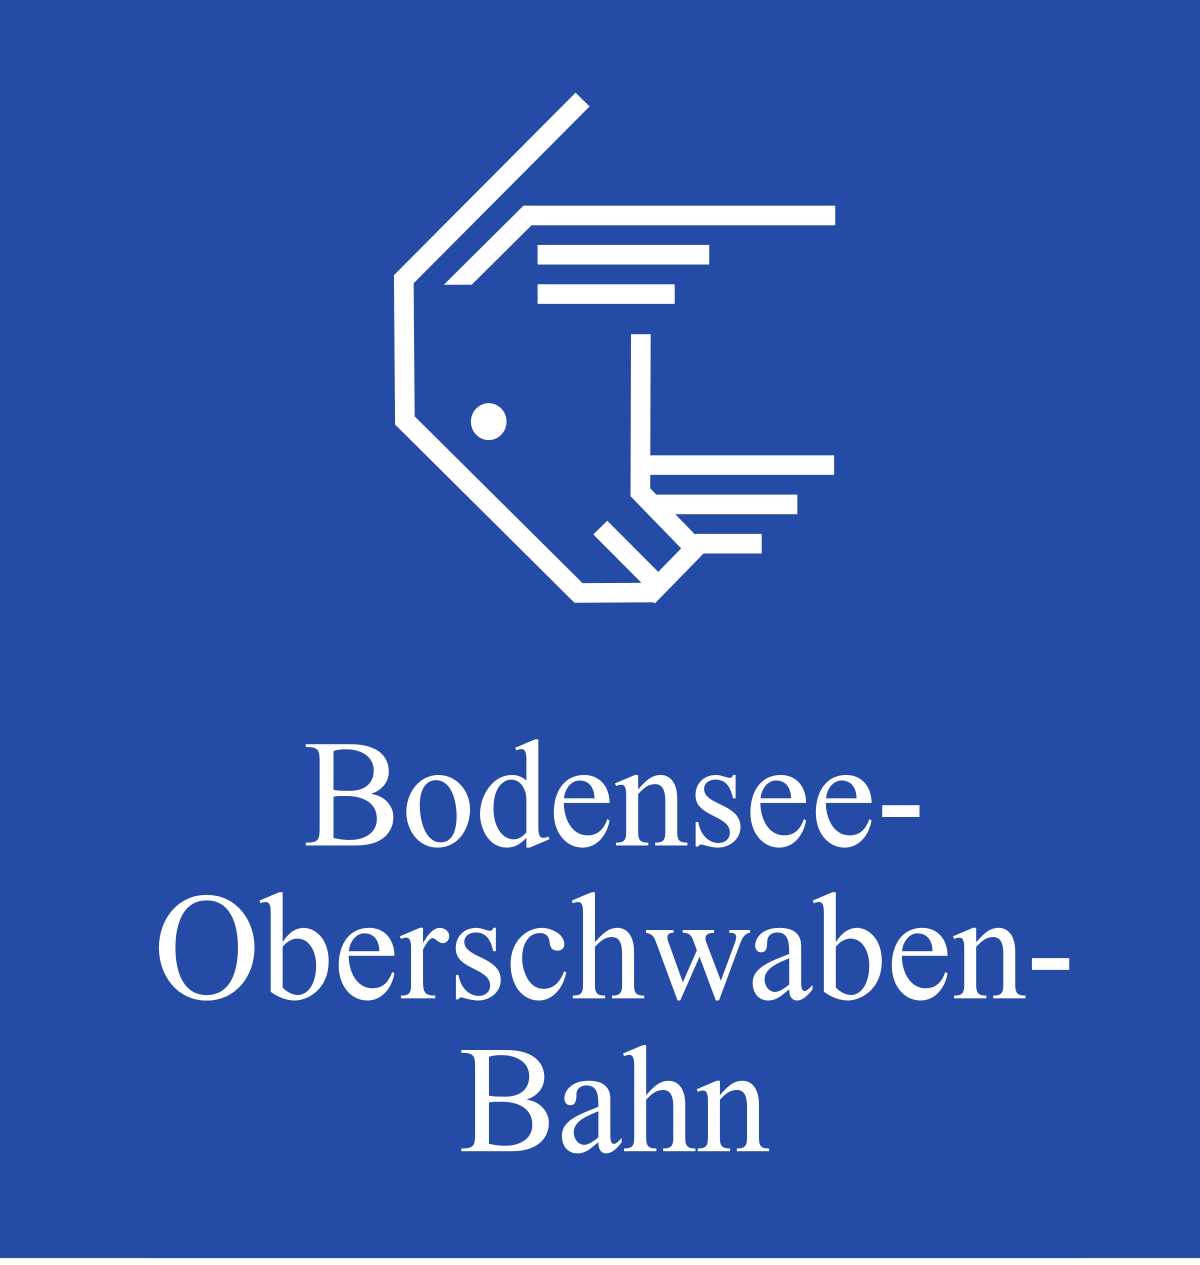 Bodensee-Oberschwaben-Bahn